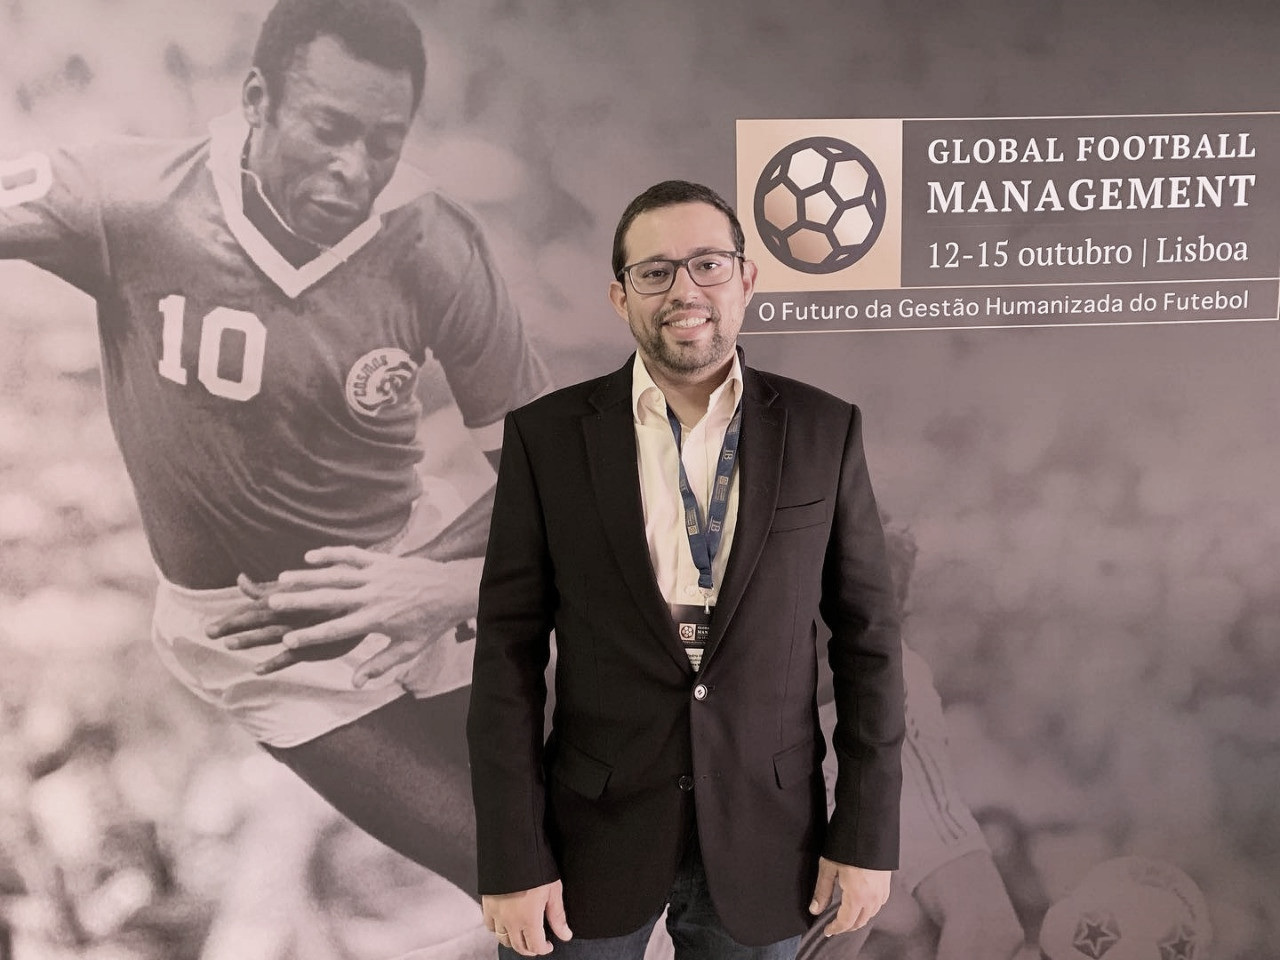 Com passagem como executivo no Bahia, Pedro Henriques avalia impacto da troca de técnicos nos projetos de futebol